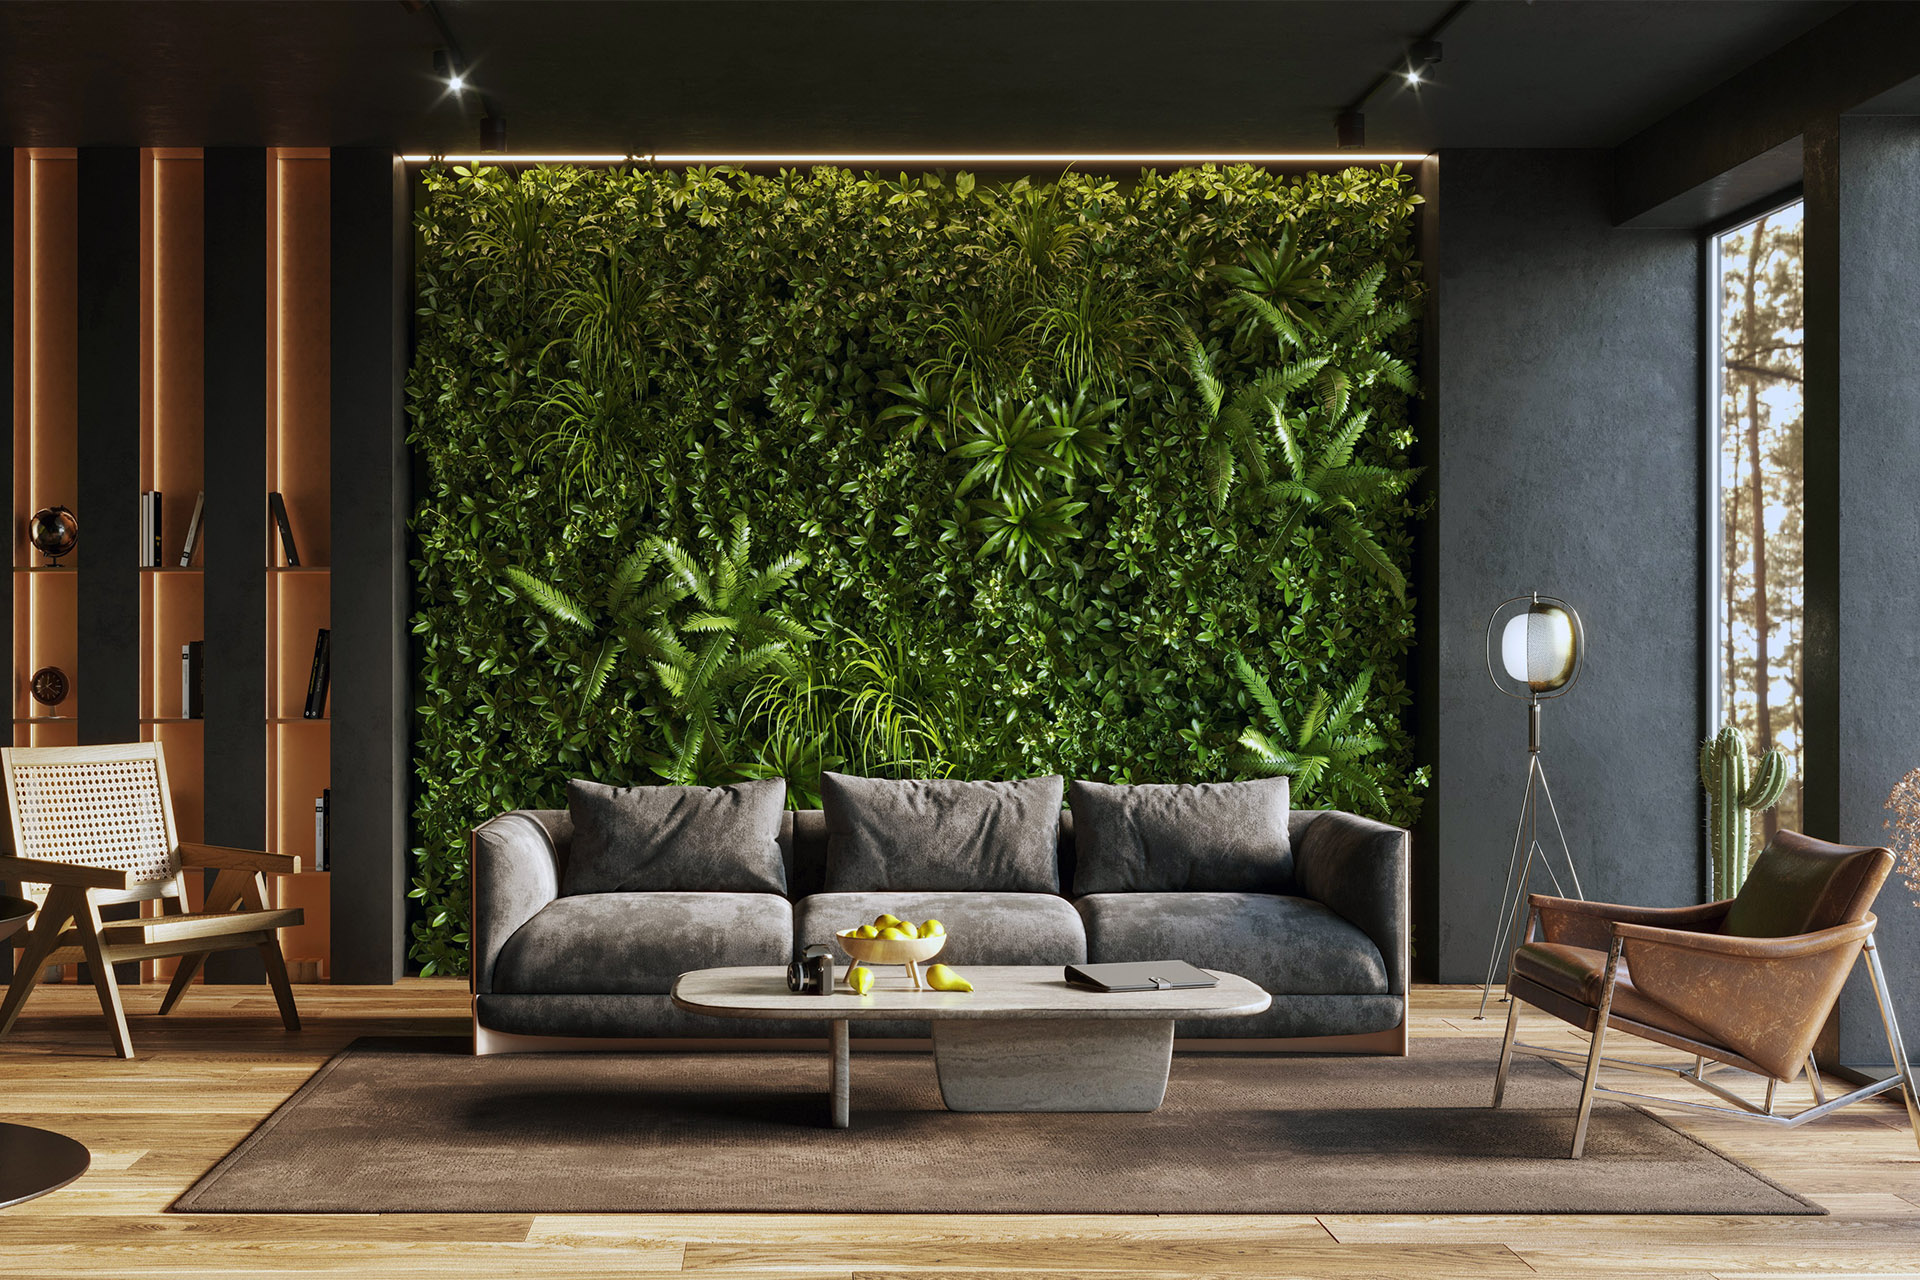 Zielone ściany z żywych roślin – nie dla każdego